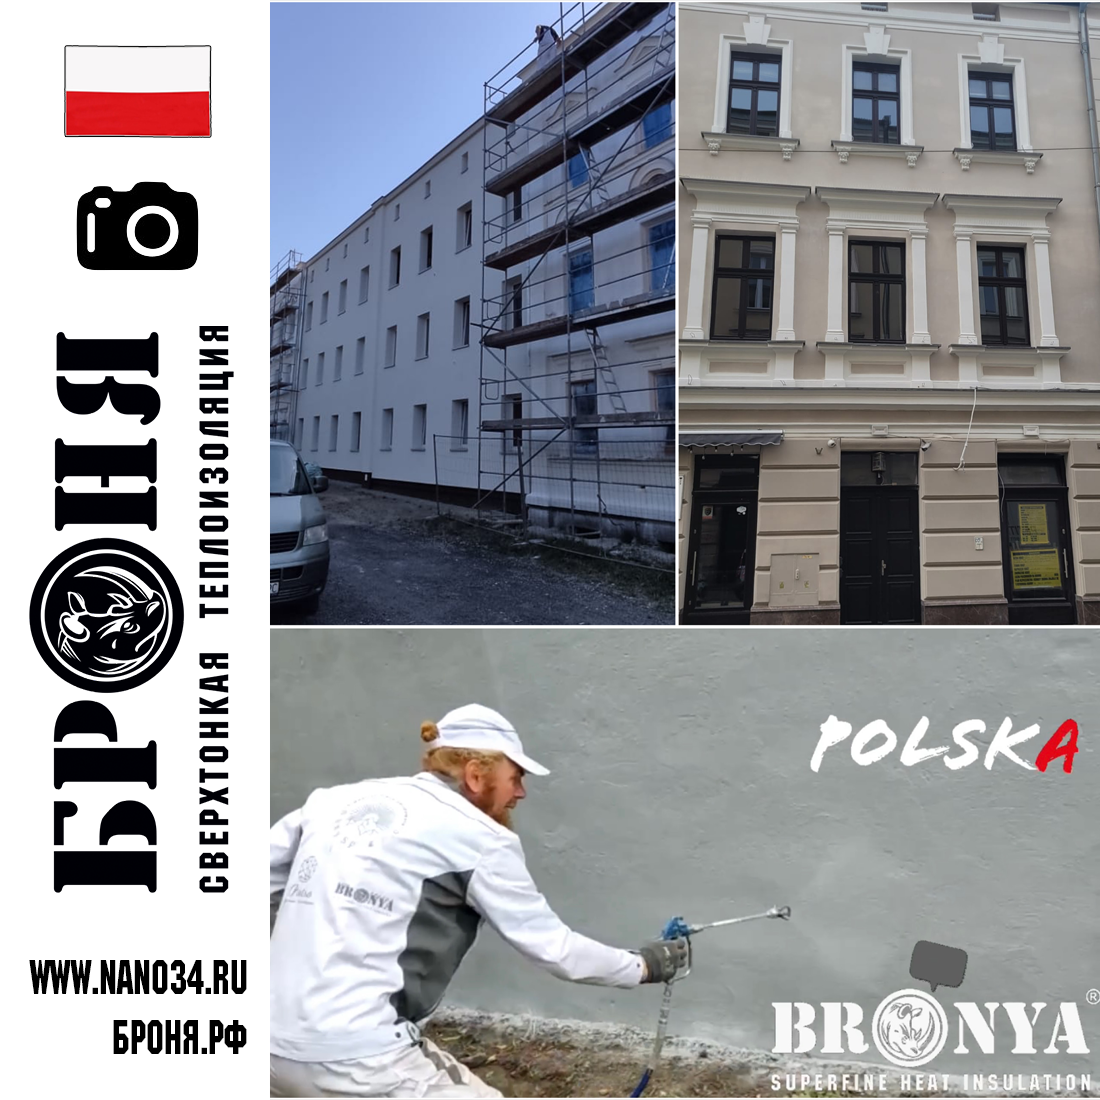 Броня Фасад НГ на стенах старинного административного здания (фото и видео ) Краков, Польша